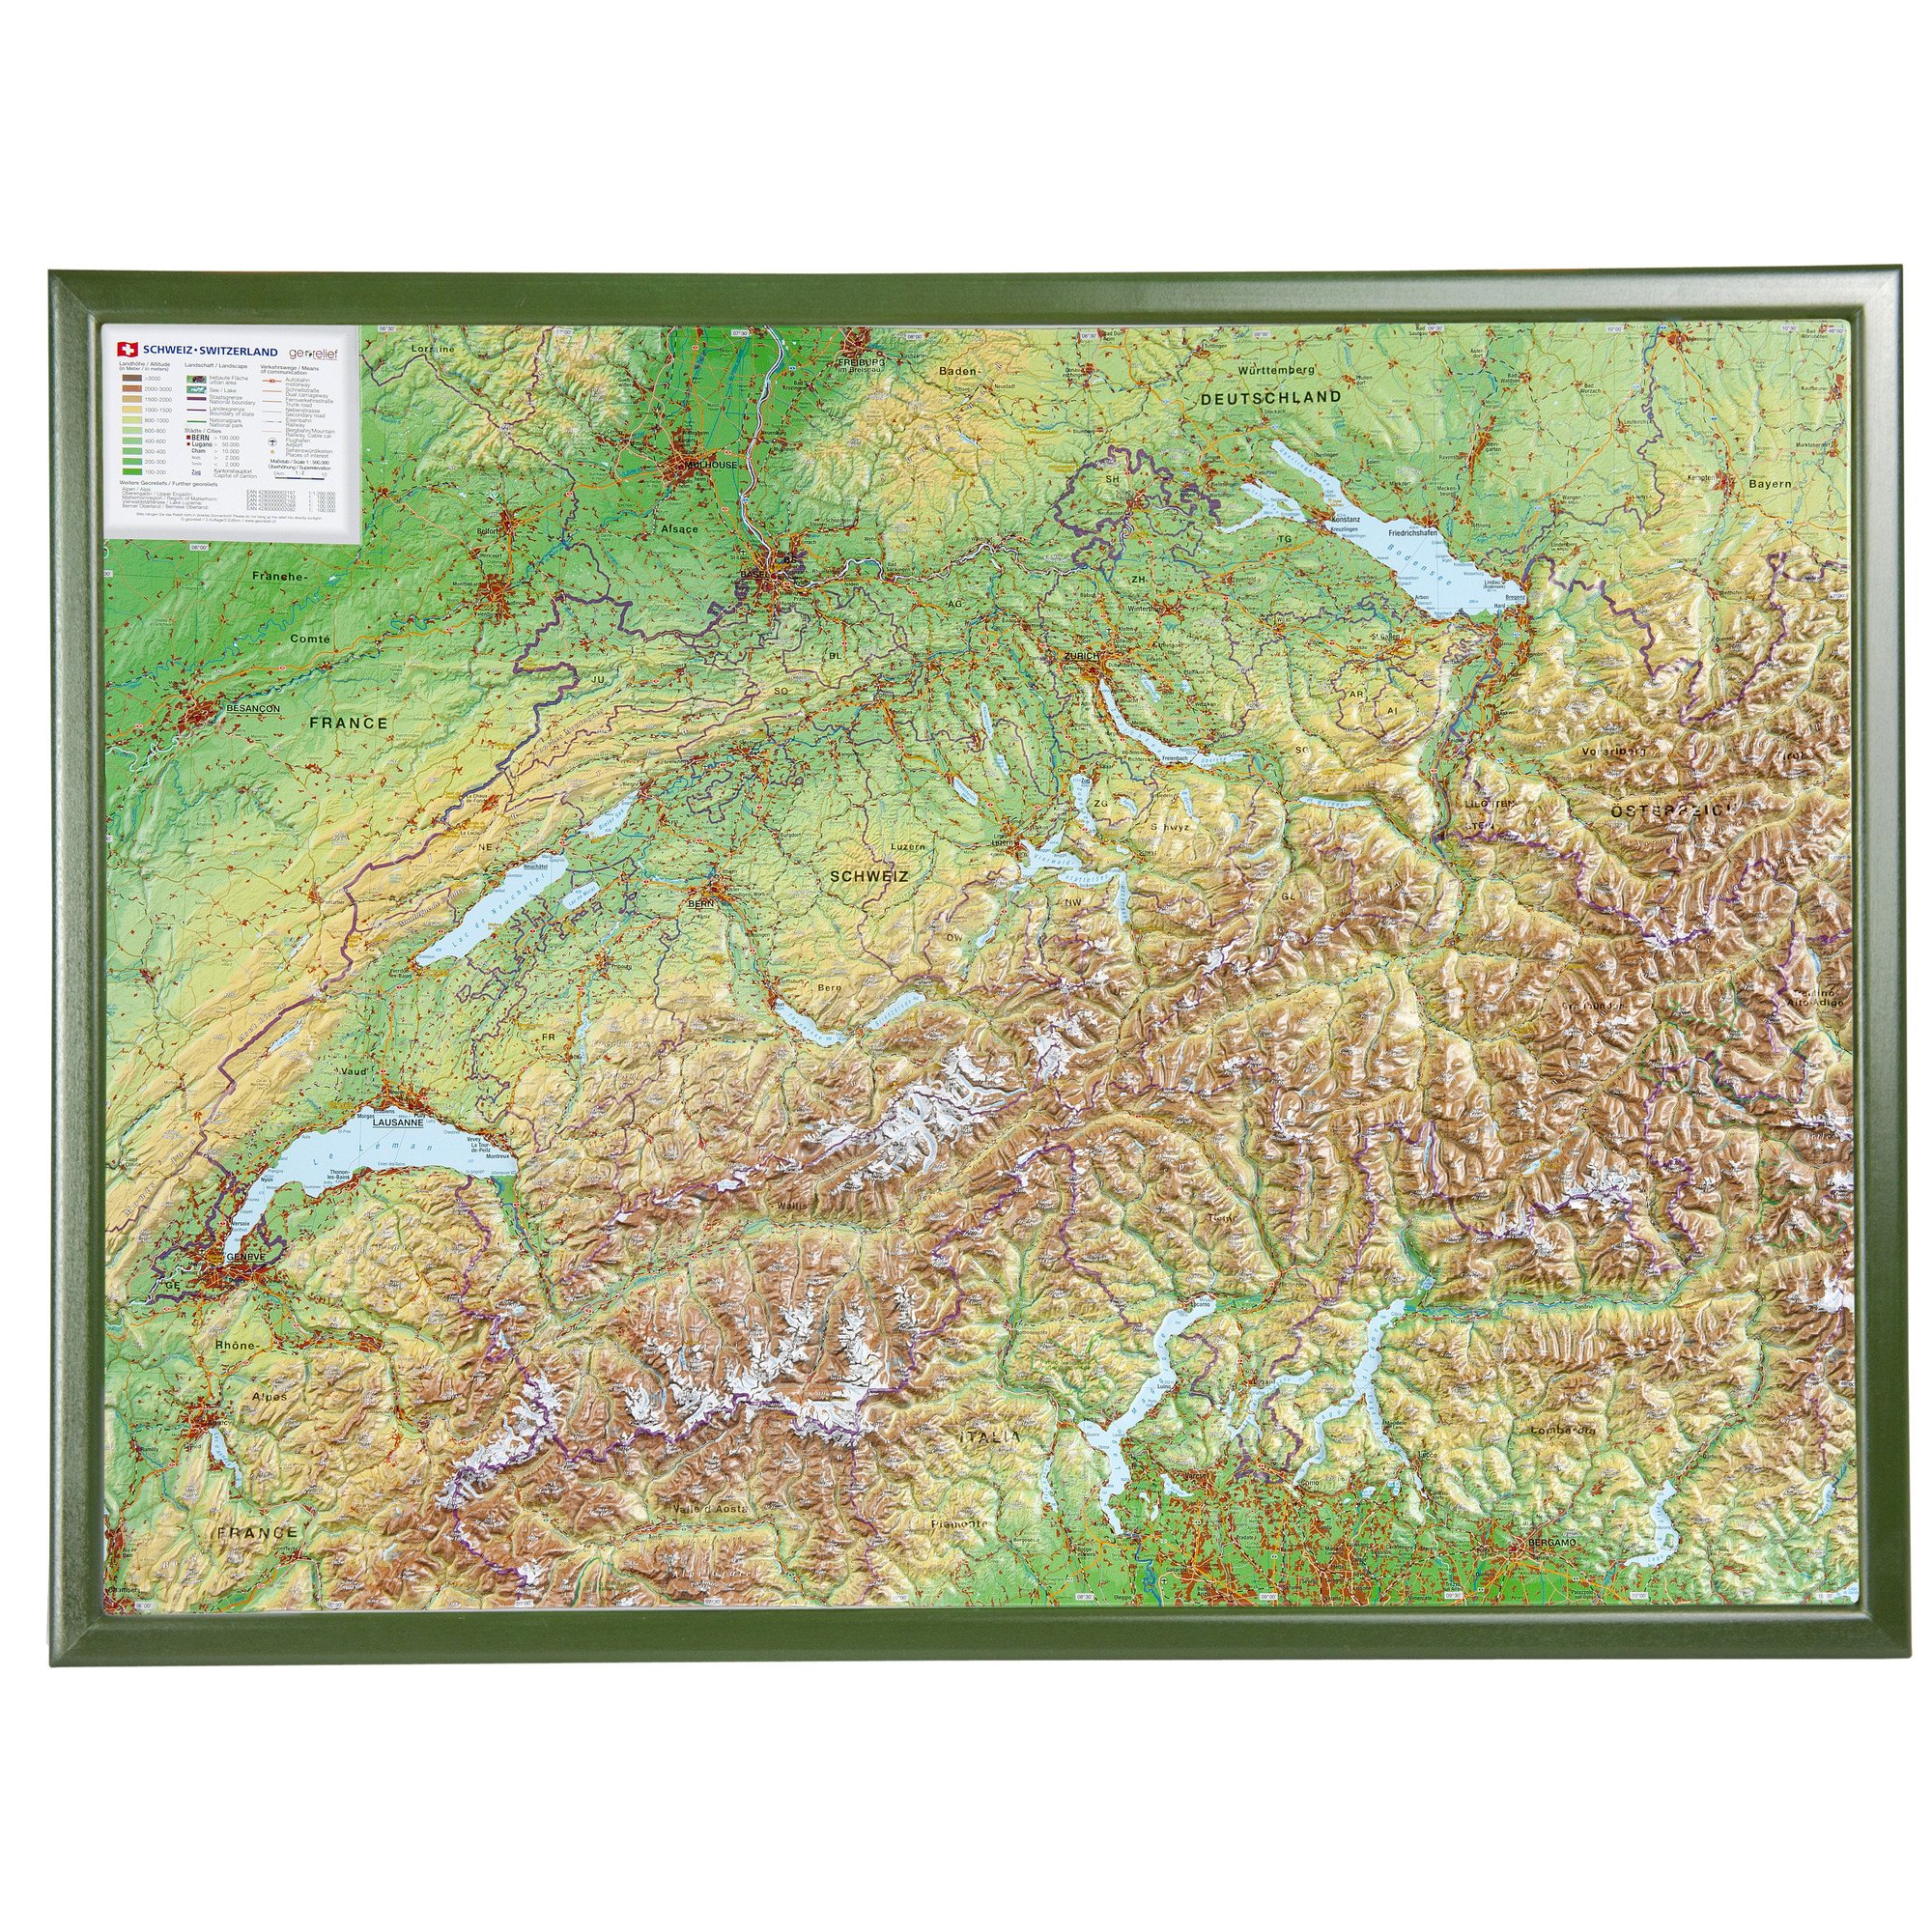 Schweiz 1:500.000 mit Rahmen: Reliefkarte Schweiz mit grünfarbenen Holzrahmen